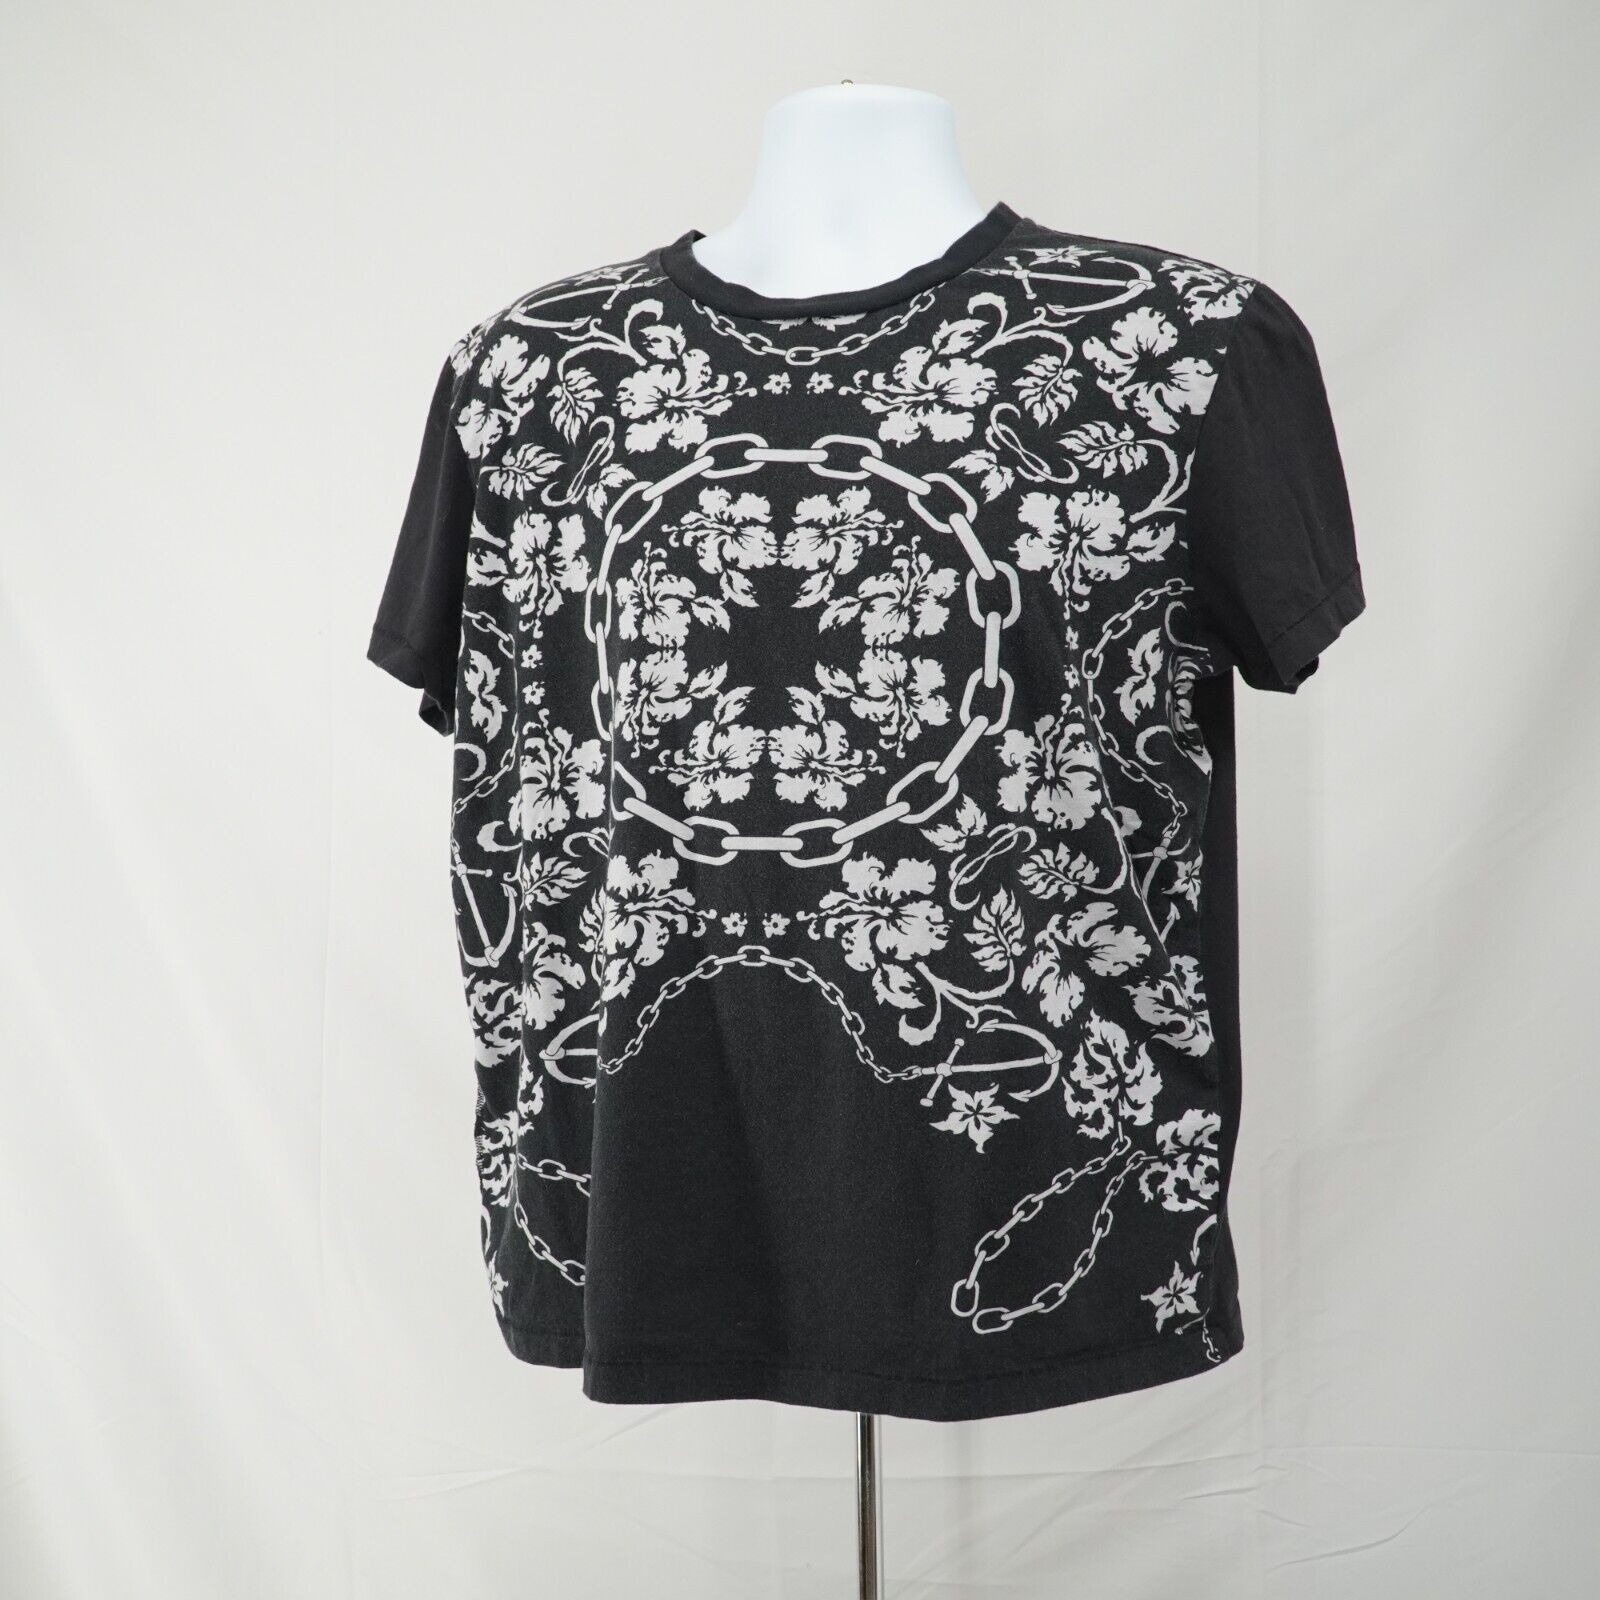 Black White Printed Shirt Floral Chains Anchor Hawaiian Tee - 17